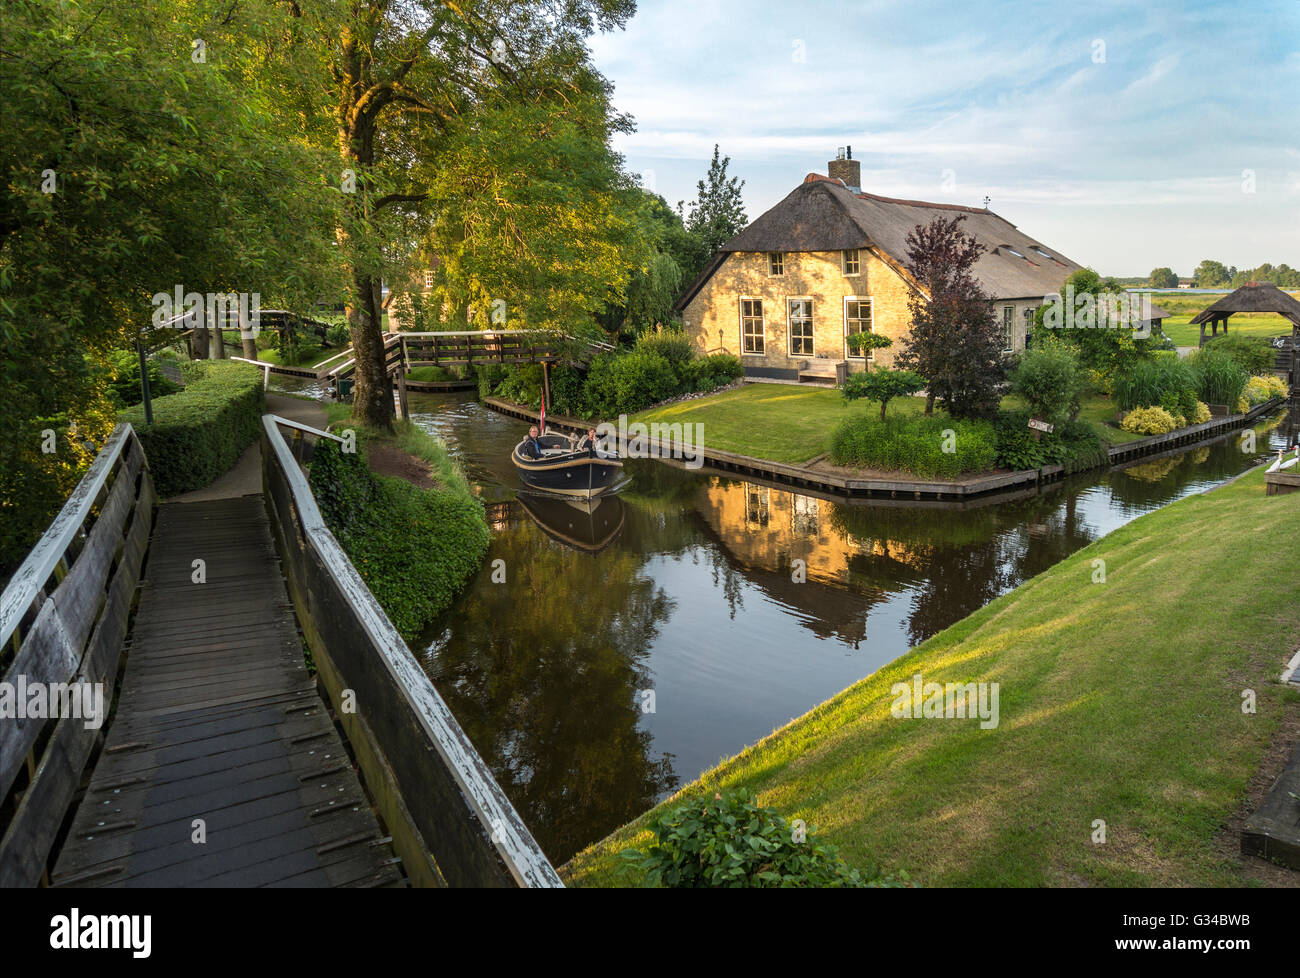 Giethoorn, Países Bajos. Barco en el canal o la aldea Dorpsgracht con granja reconvertida en la isla con puente privado. Foto de stock